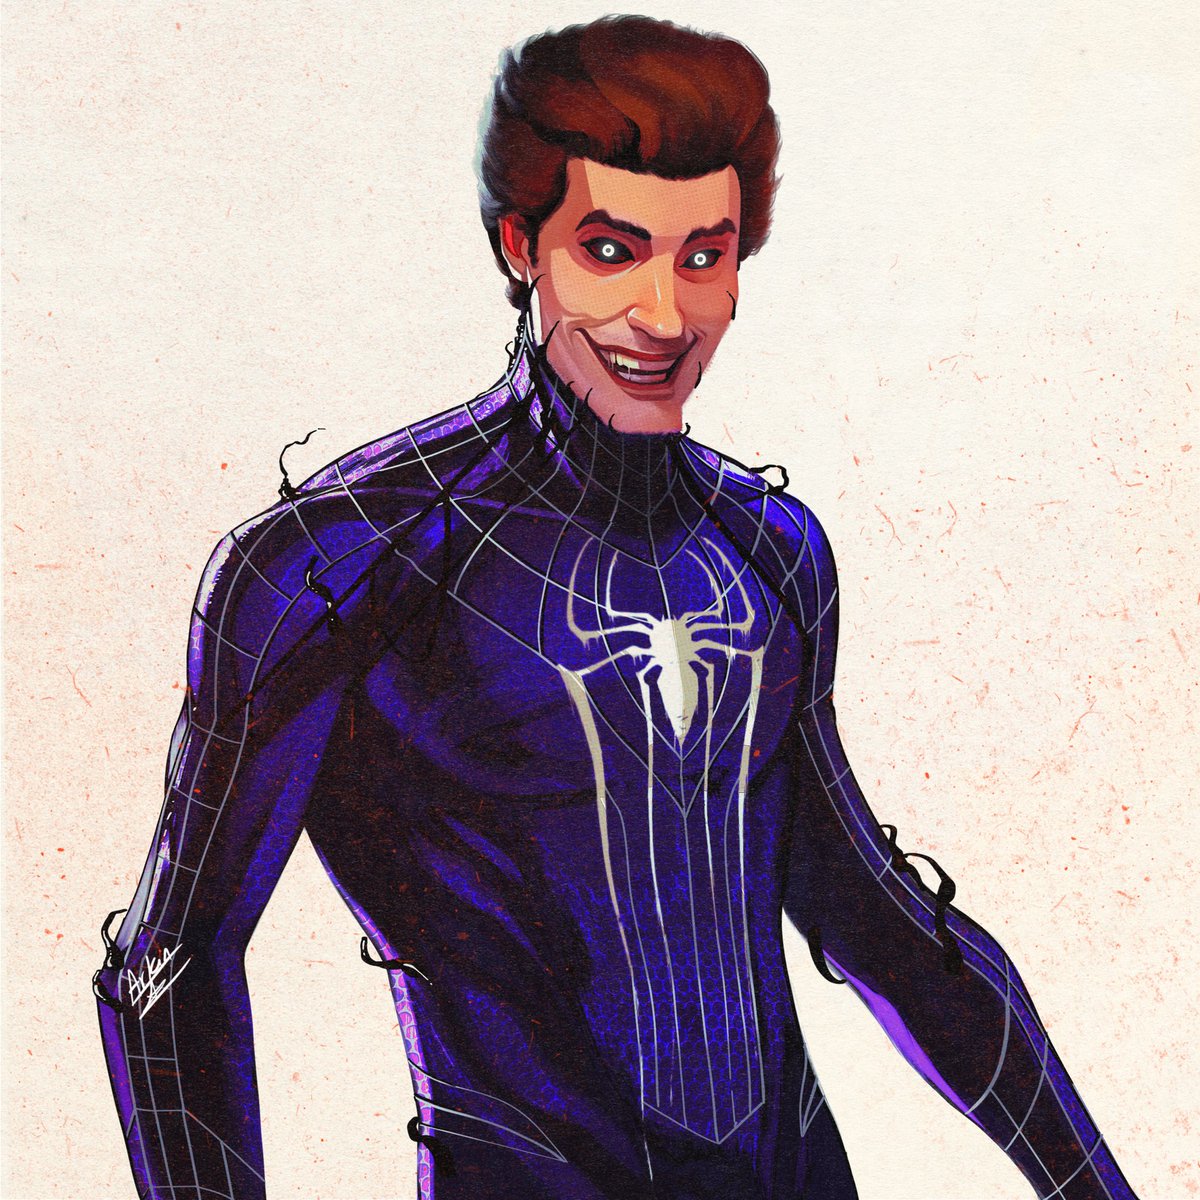 RT @ArkinTyagi: Andrew garfield black suit Spider-Man #venom #spiderman #spidermannowayhome #daredevil https://t.co/WOpsYQVaeb